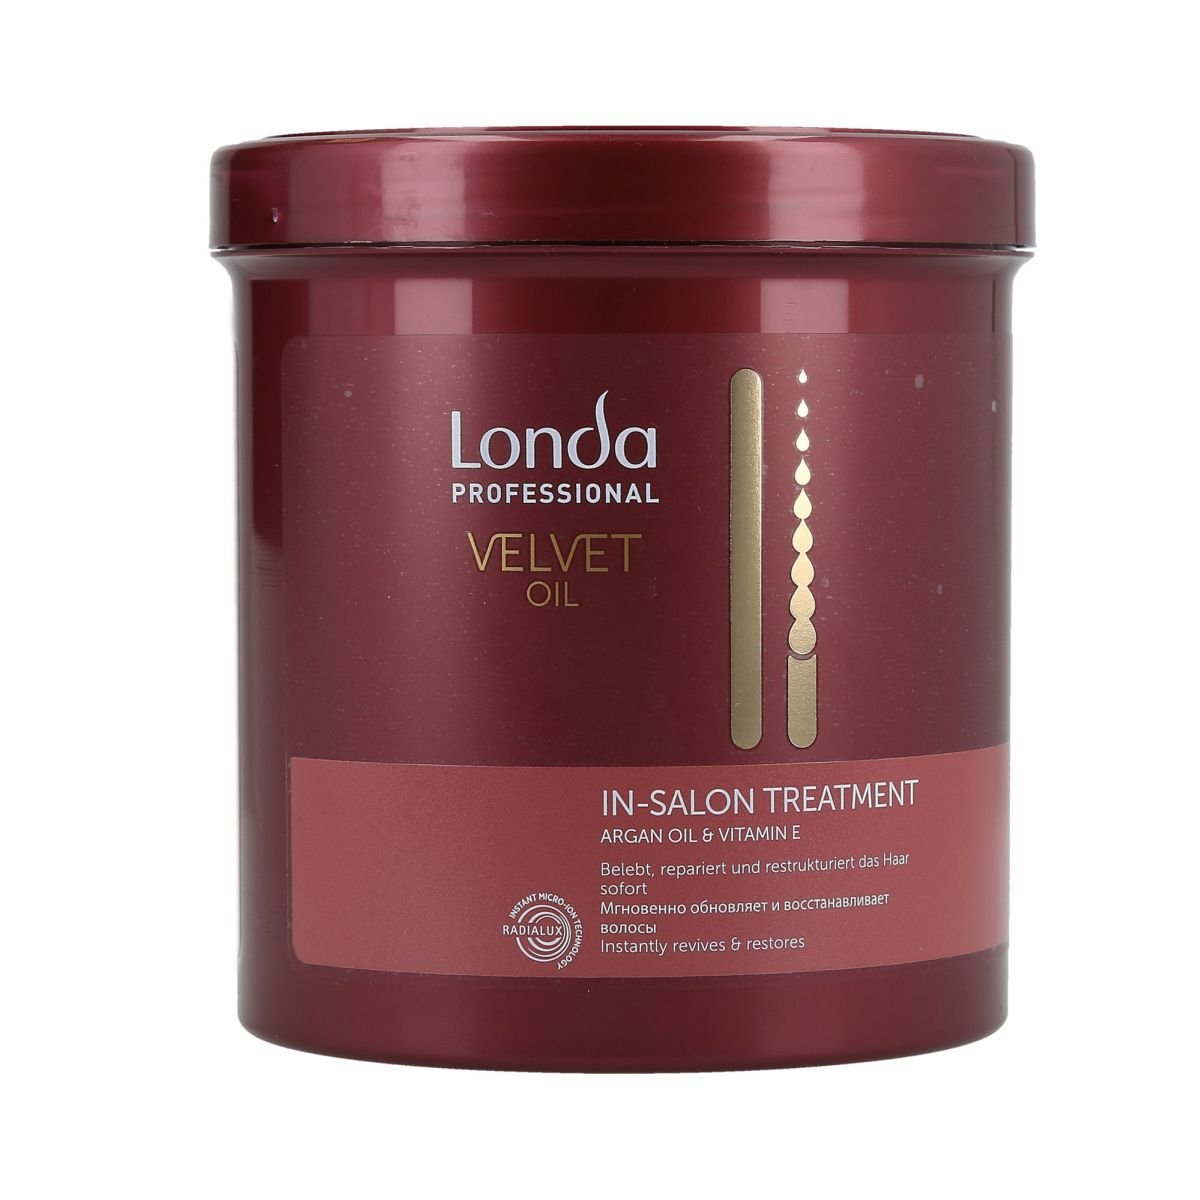 Zdjęcia - Szampon Londa , Velvet Oil, kuracja do włosów z olejkiem arganowym, 750 ml 